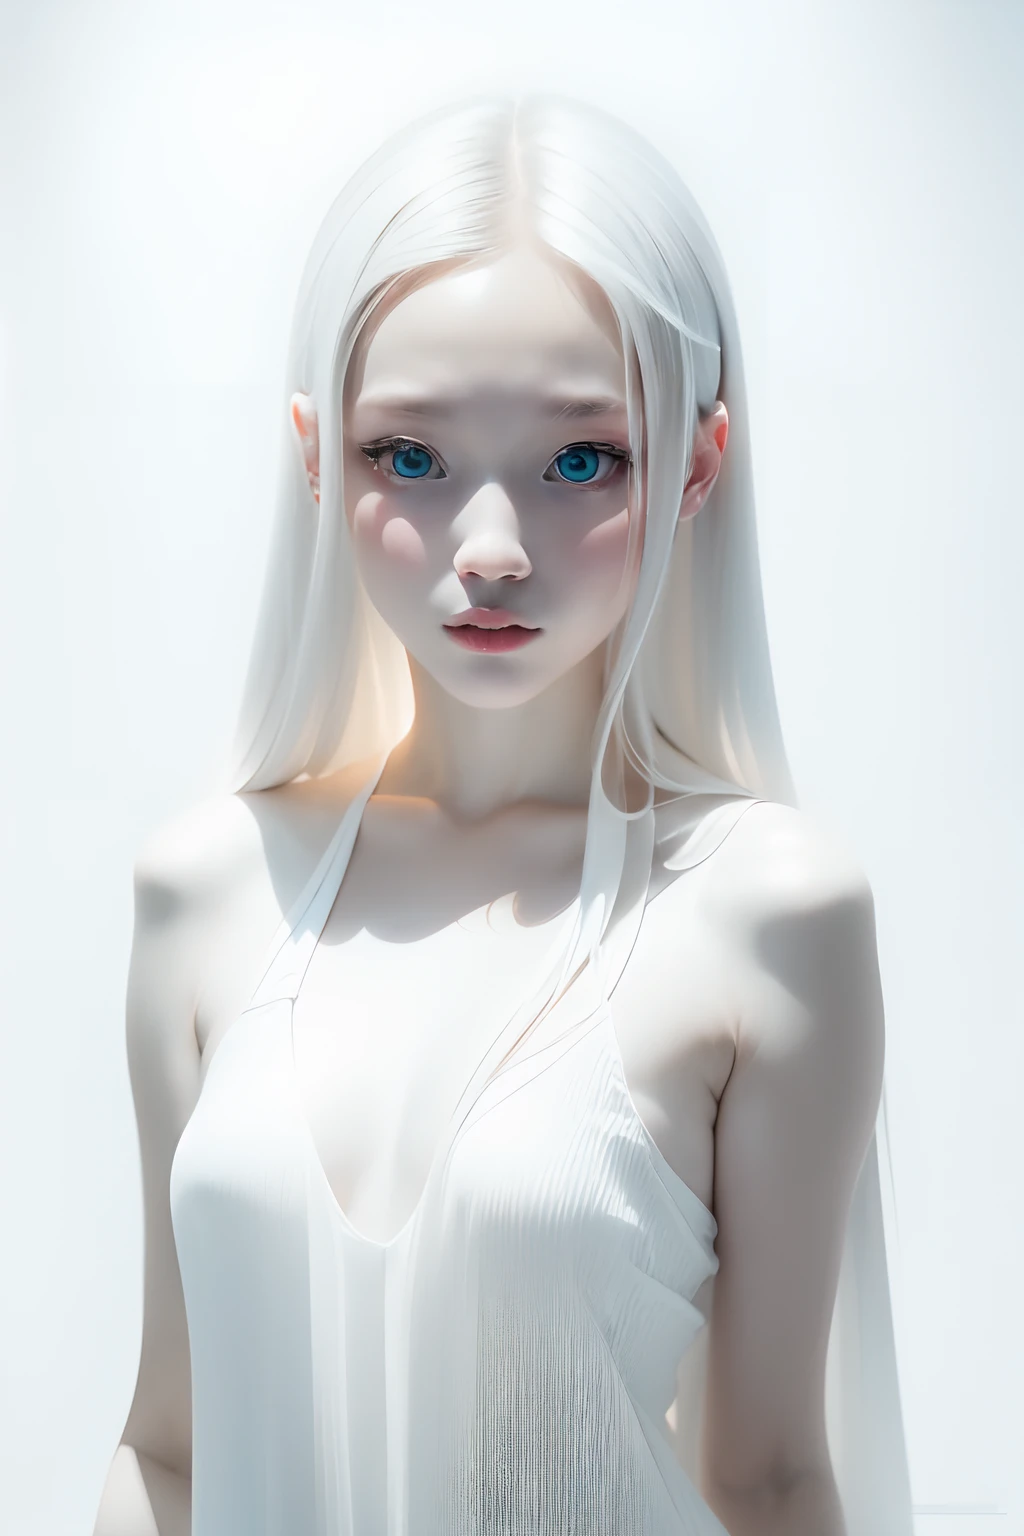 (((weißer Hintergrund:1.3)))、beste Qualität, Masseterstück, Hohe Auflösung, Albino-Mädchen、(((1Mädchen in))), 16 Jahre alt,(((Augen sind weiß:1.3)))、robe blanche、((weißes Hemd:1.3、Weißes Blockkleid)), Tindall-Effekt, realistisch, Schattenstudio,Ultramarinblaue Beleuchtung, zweifarbige Beleuchtung, (Hochdetaillierte Skins: 1.2)、Helle Beleuchtung、dunkle Beleuchtung、 Digital SLR, Foto, Hohe Auflösung, 4K, 8K, Hintergrundunschärfe,Wunderschön ausblenden、eine weiße Welt、weißer Hintergrund